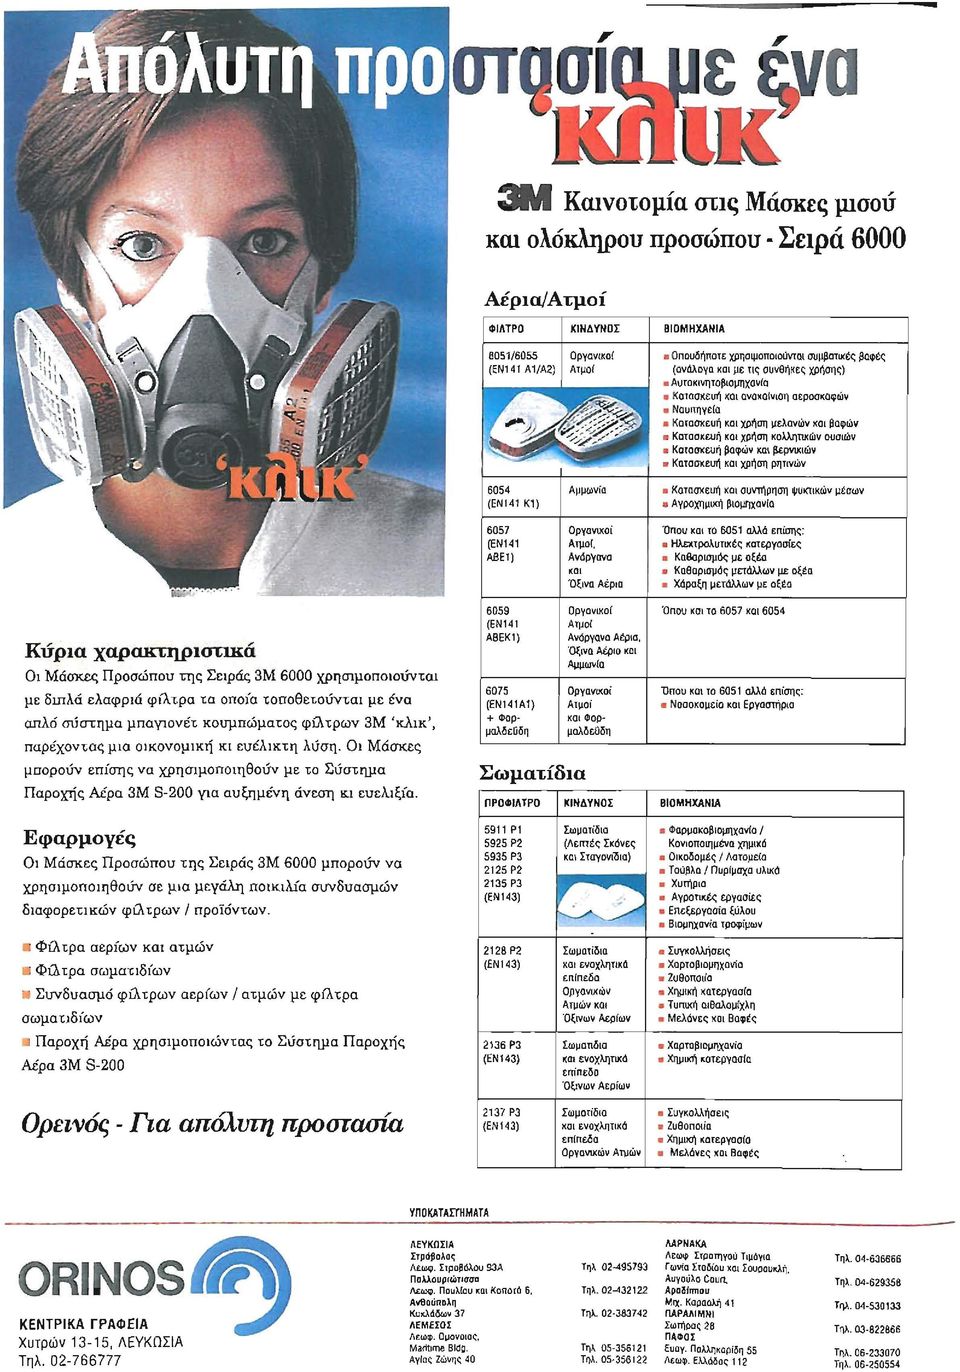 βαφών και βερνικιών KαιασKεUΉ και χρήση ρηηνών 6054 (ΕΝ141 Κ1) Αμμων[α Κατασκευή και συντήρηση ψυκτικών μέσων AγΡOXΤμtισi βιομηχανα 6057 (ΕΝ141 λβε1) Oργαvιιιoί Ατμοί, Ανόργανα κα.